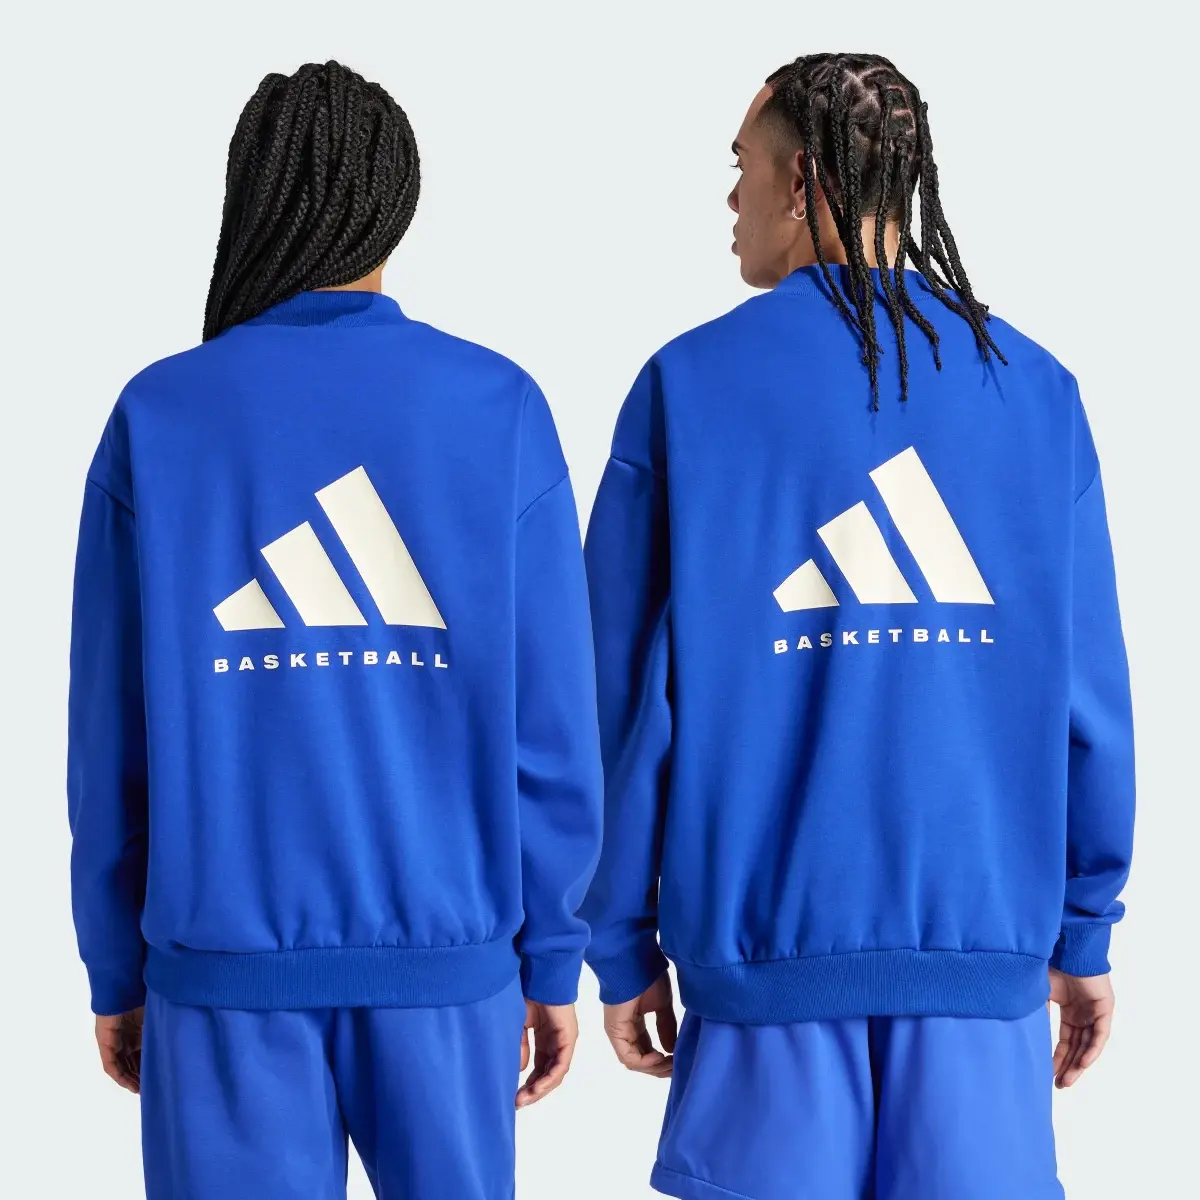 Adidas Basketball Crew Sweatshirt. 2